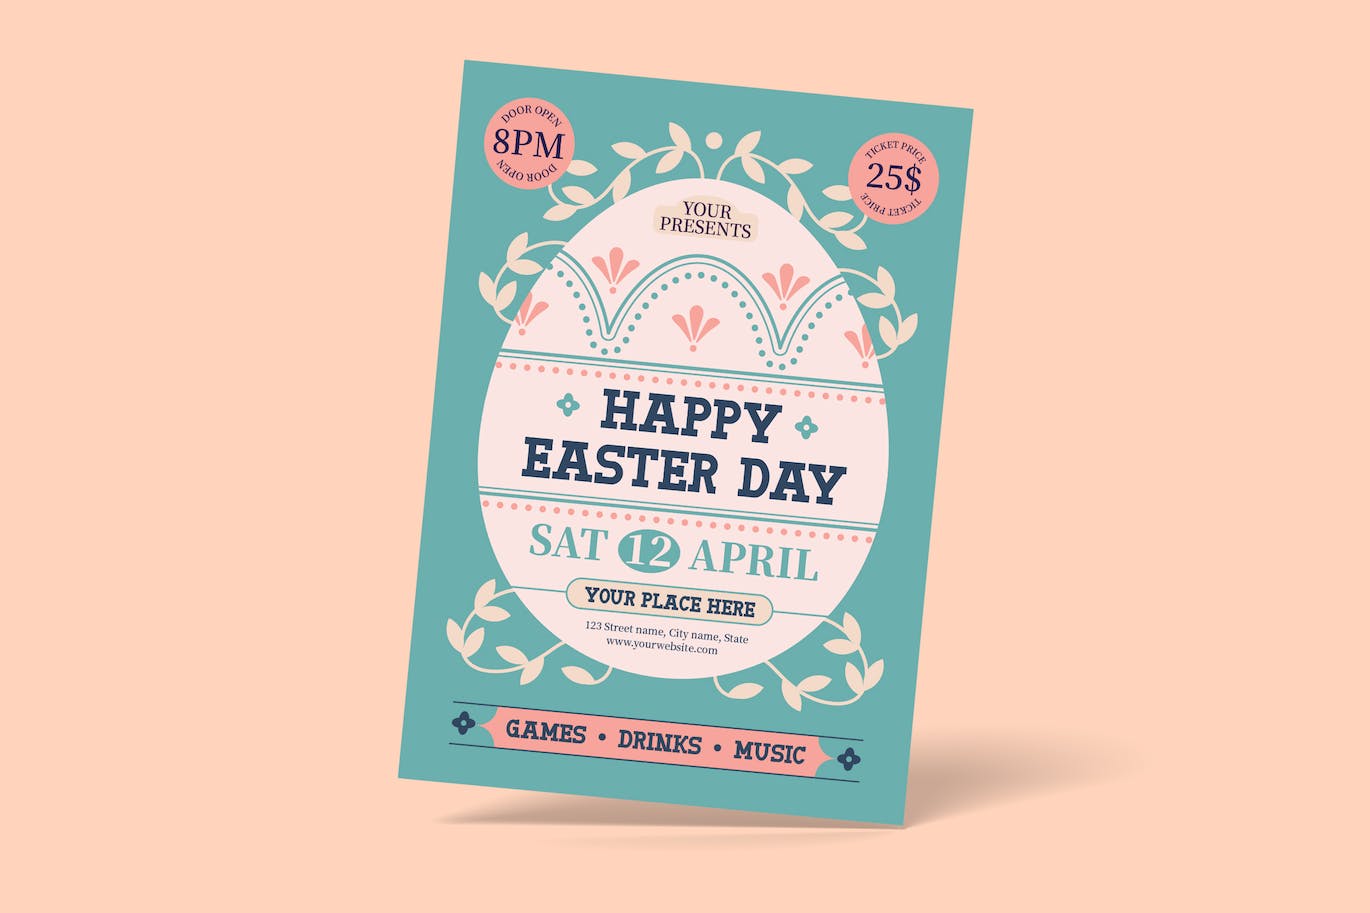 复活节寻蛋海报模板 Easter Egg Hunt Flyer 设计素材 第1张